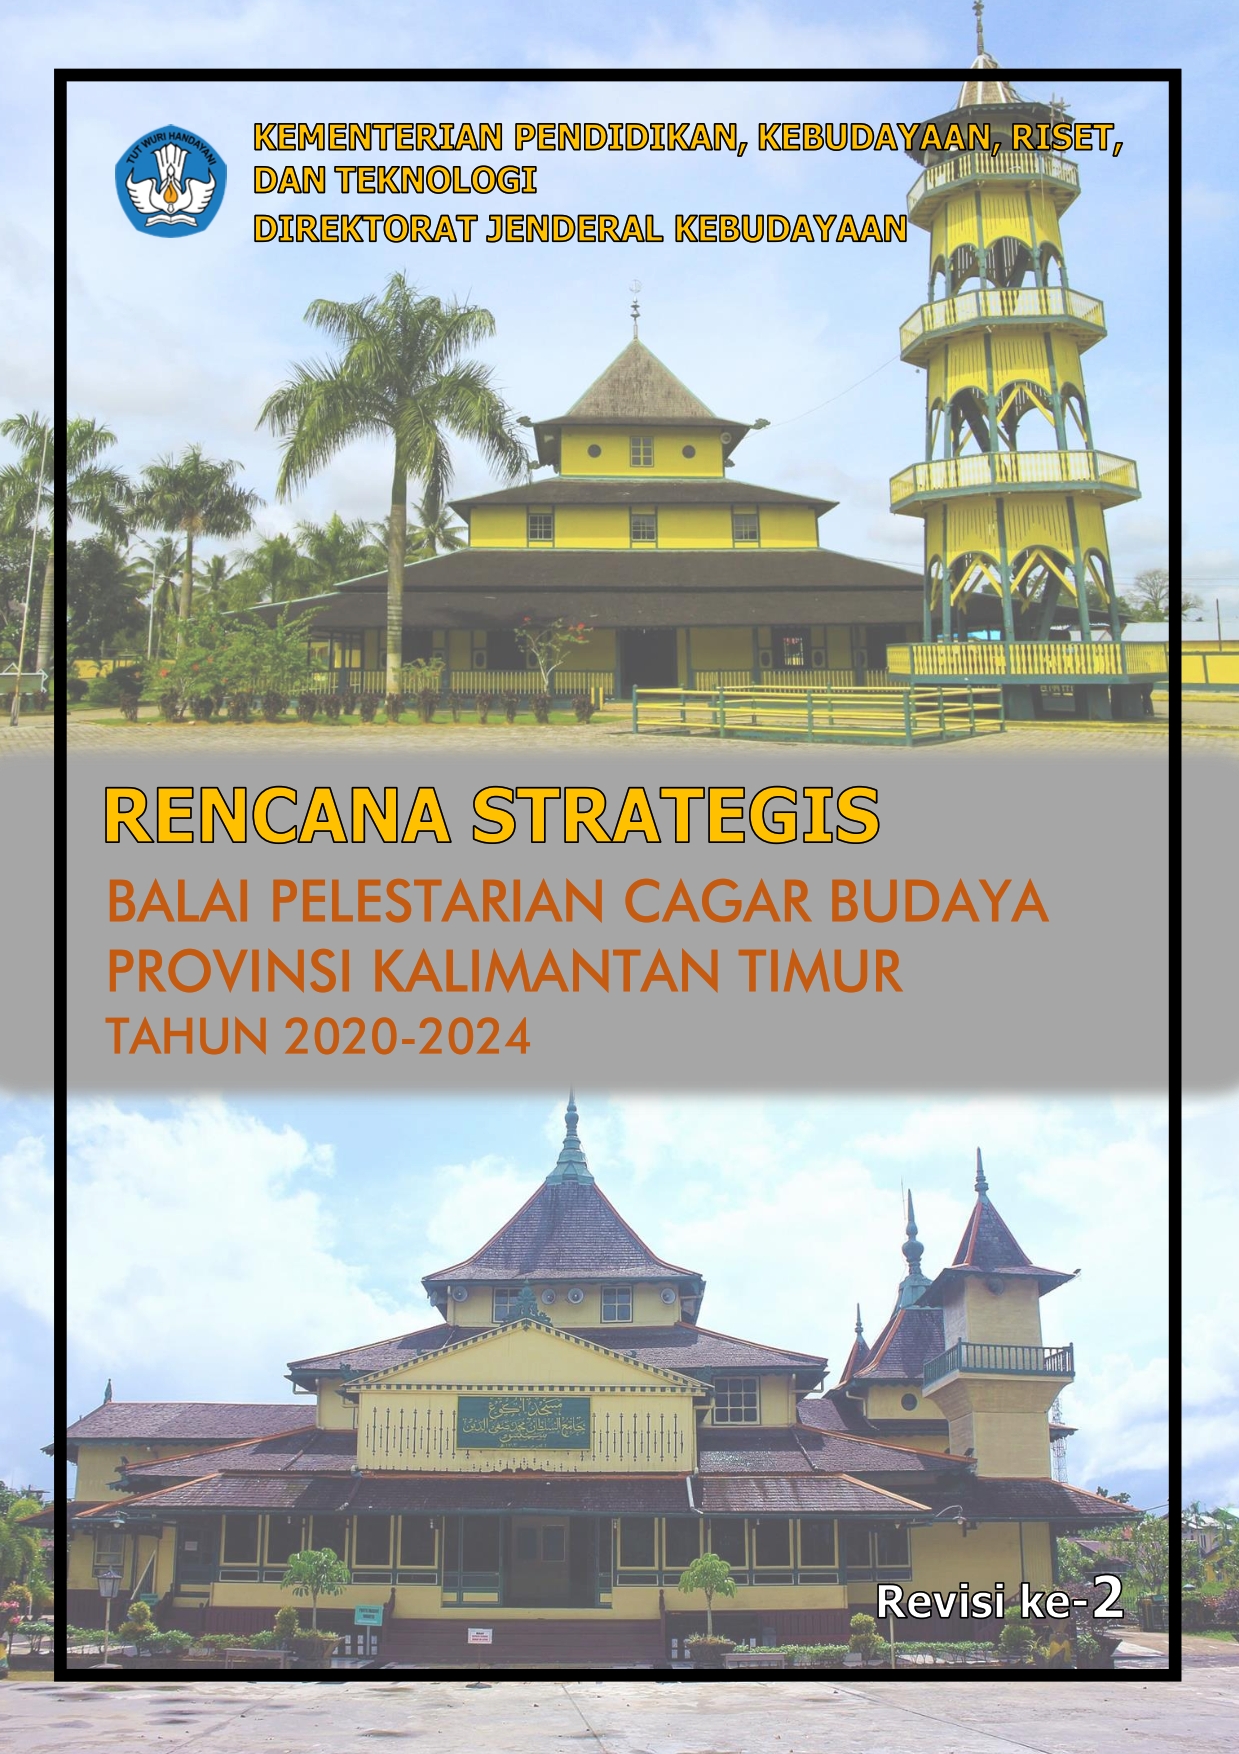 Renstra Balai Pelestarian Cagar Budaya Provinsi Kaltim 2020-2024